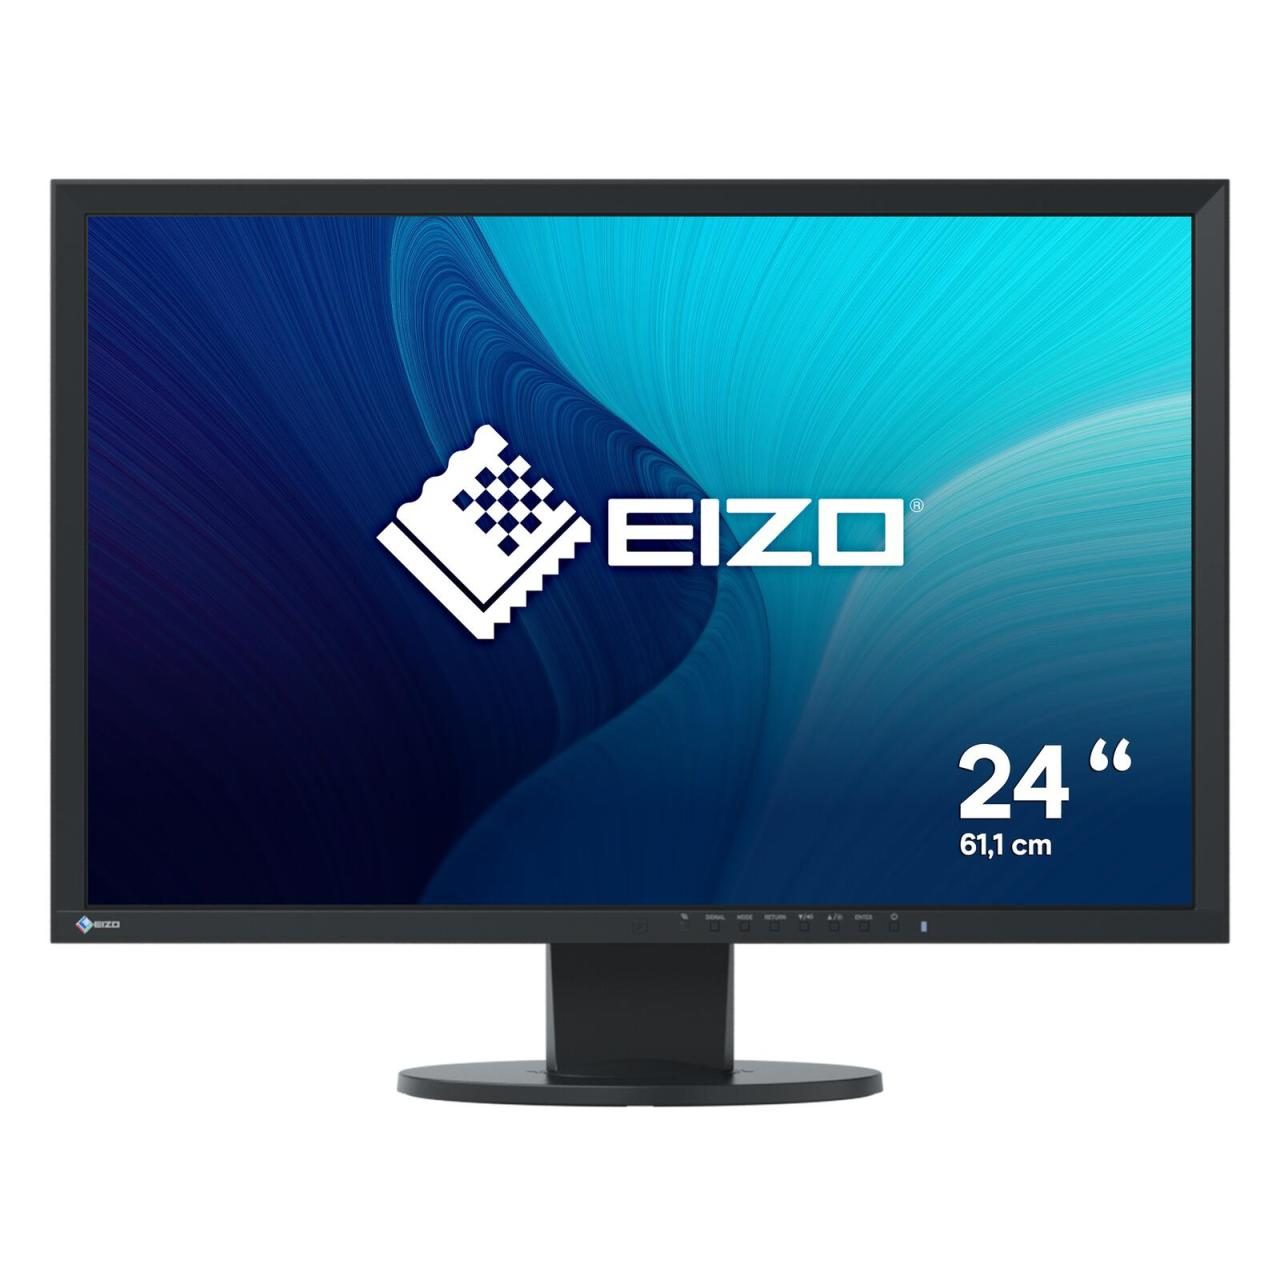 EIZO FlexScan EV2430-BK LED-Monitor 61,1 cm 24,1 Zoll schwarz von EIZO